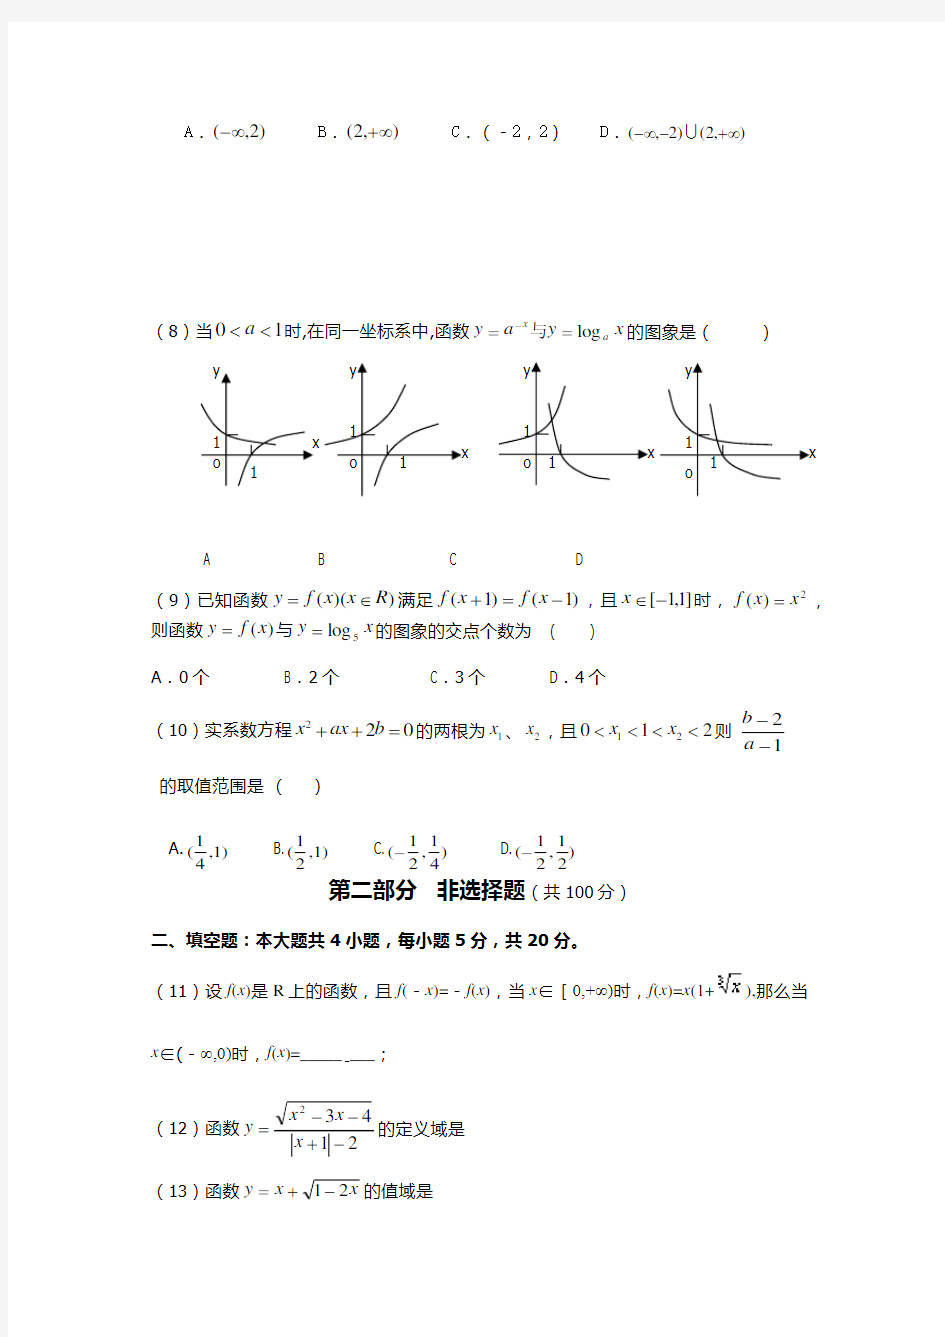 2016江西外语外贸职业学院数学单招测试题(附答案解析)